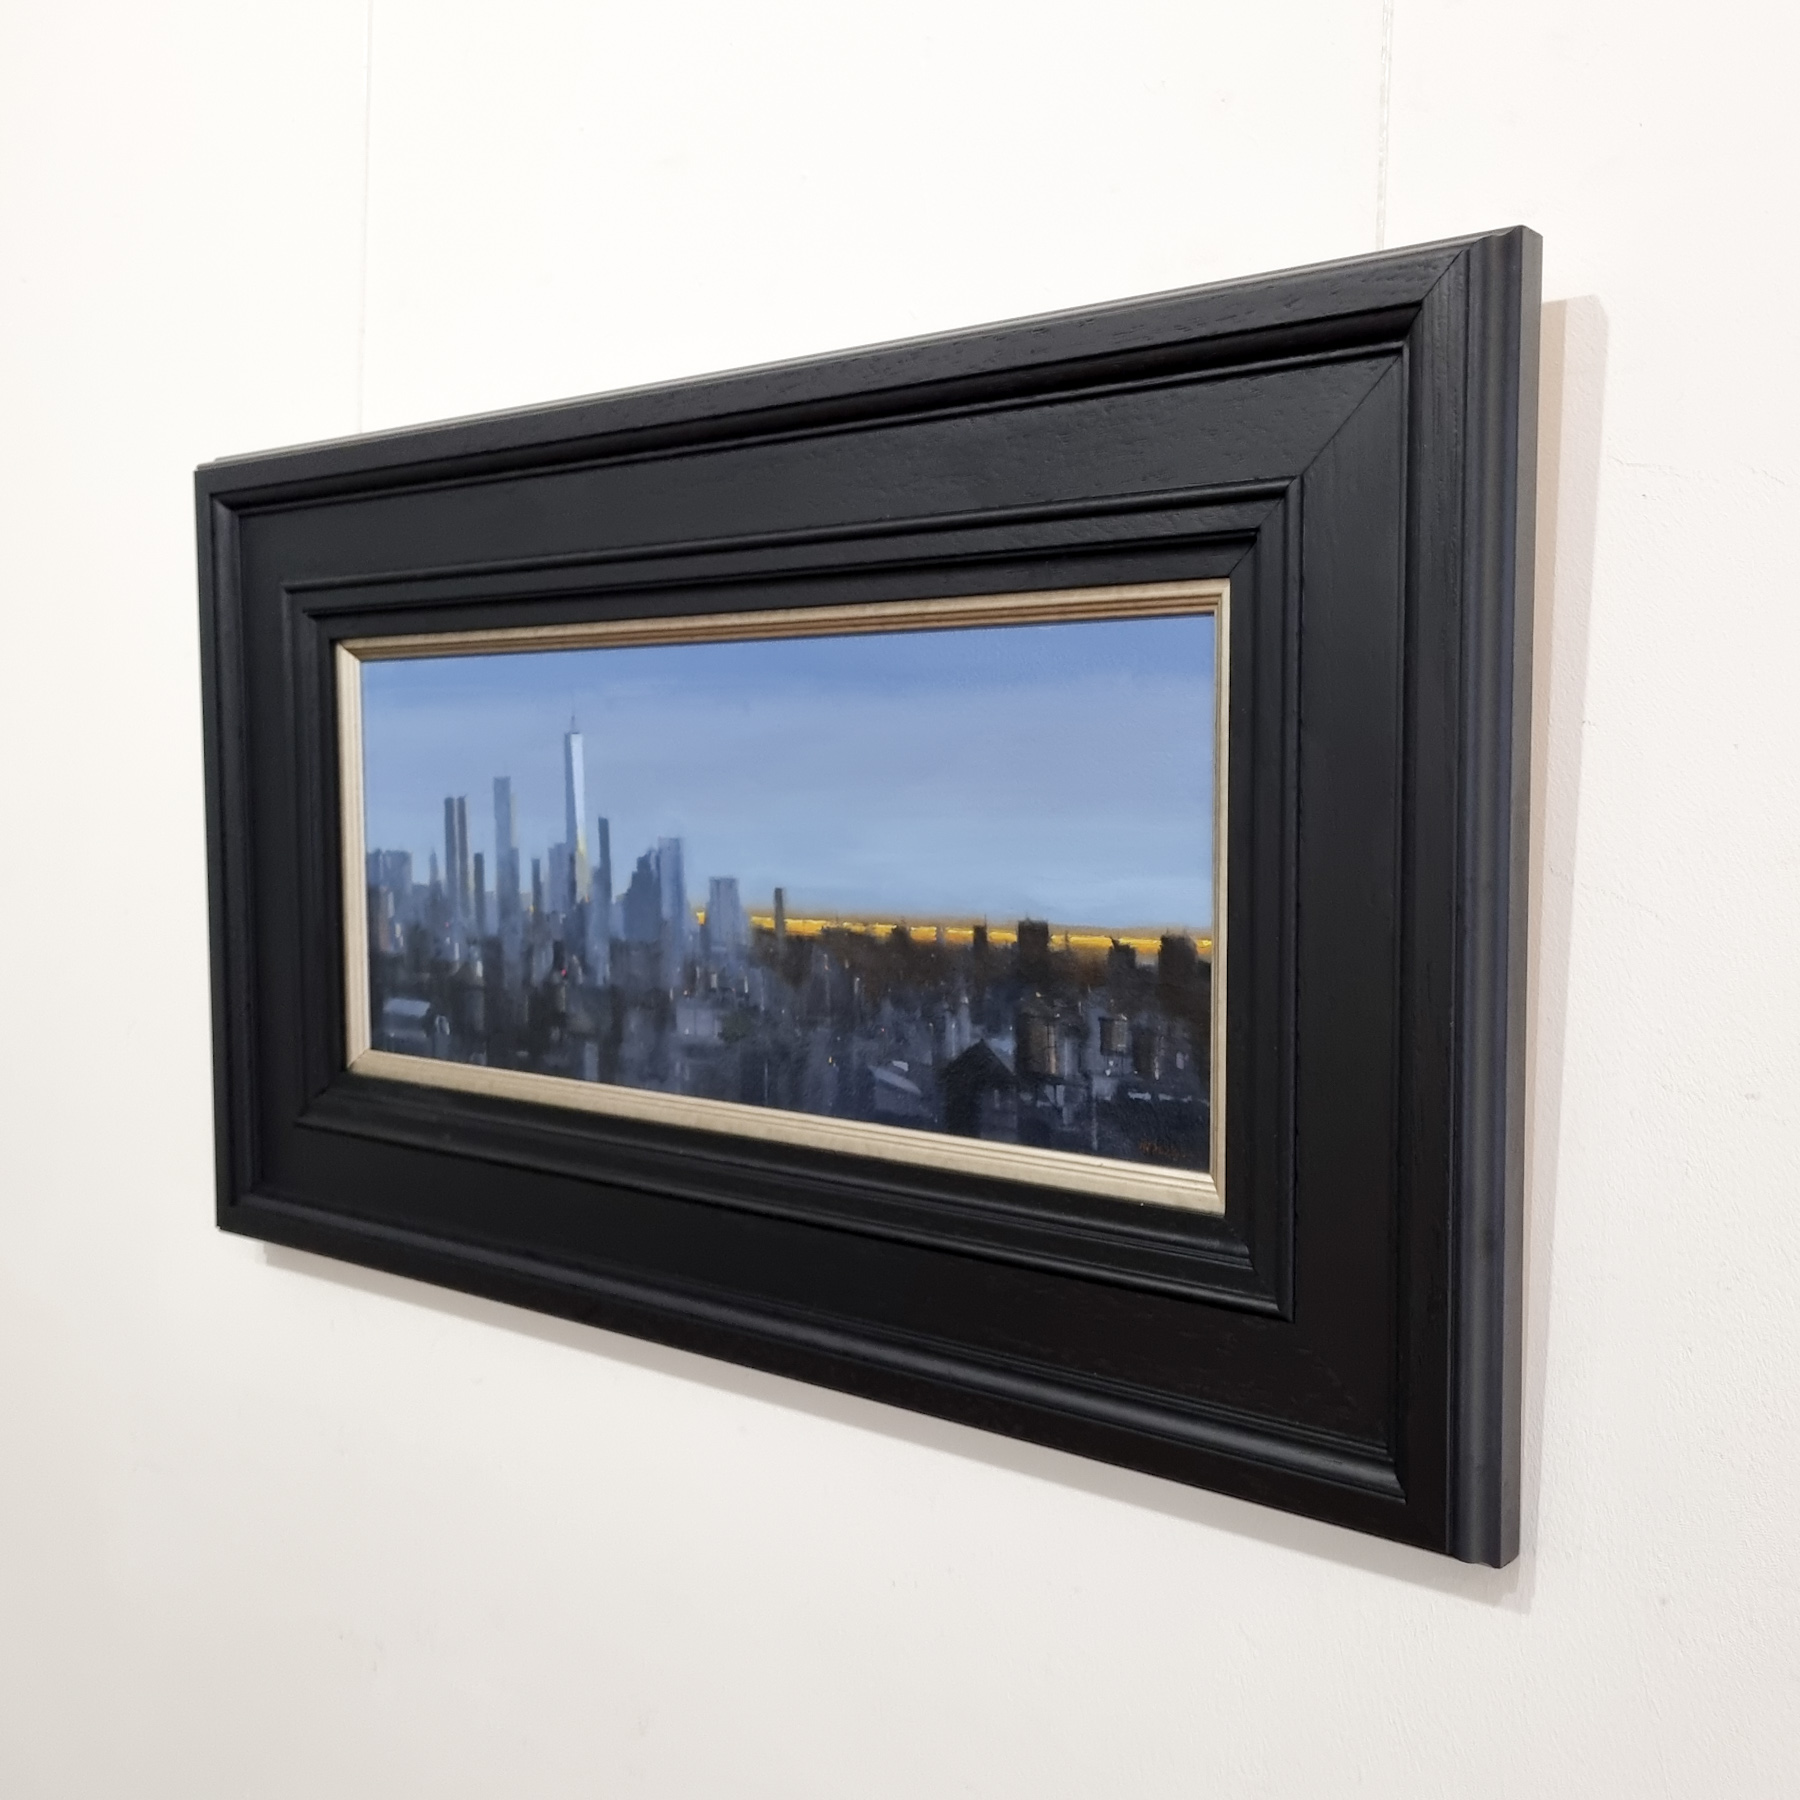 'NYC Sunset' by artist Michael Ashcroft ROI MAFA